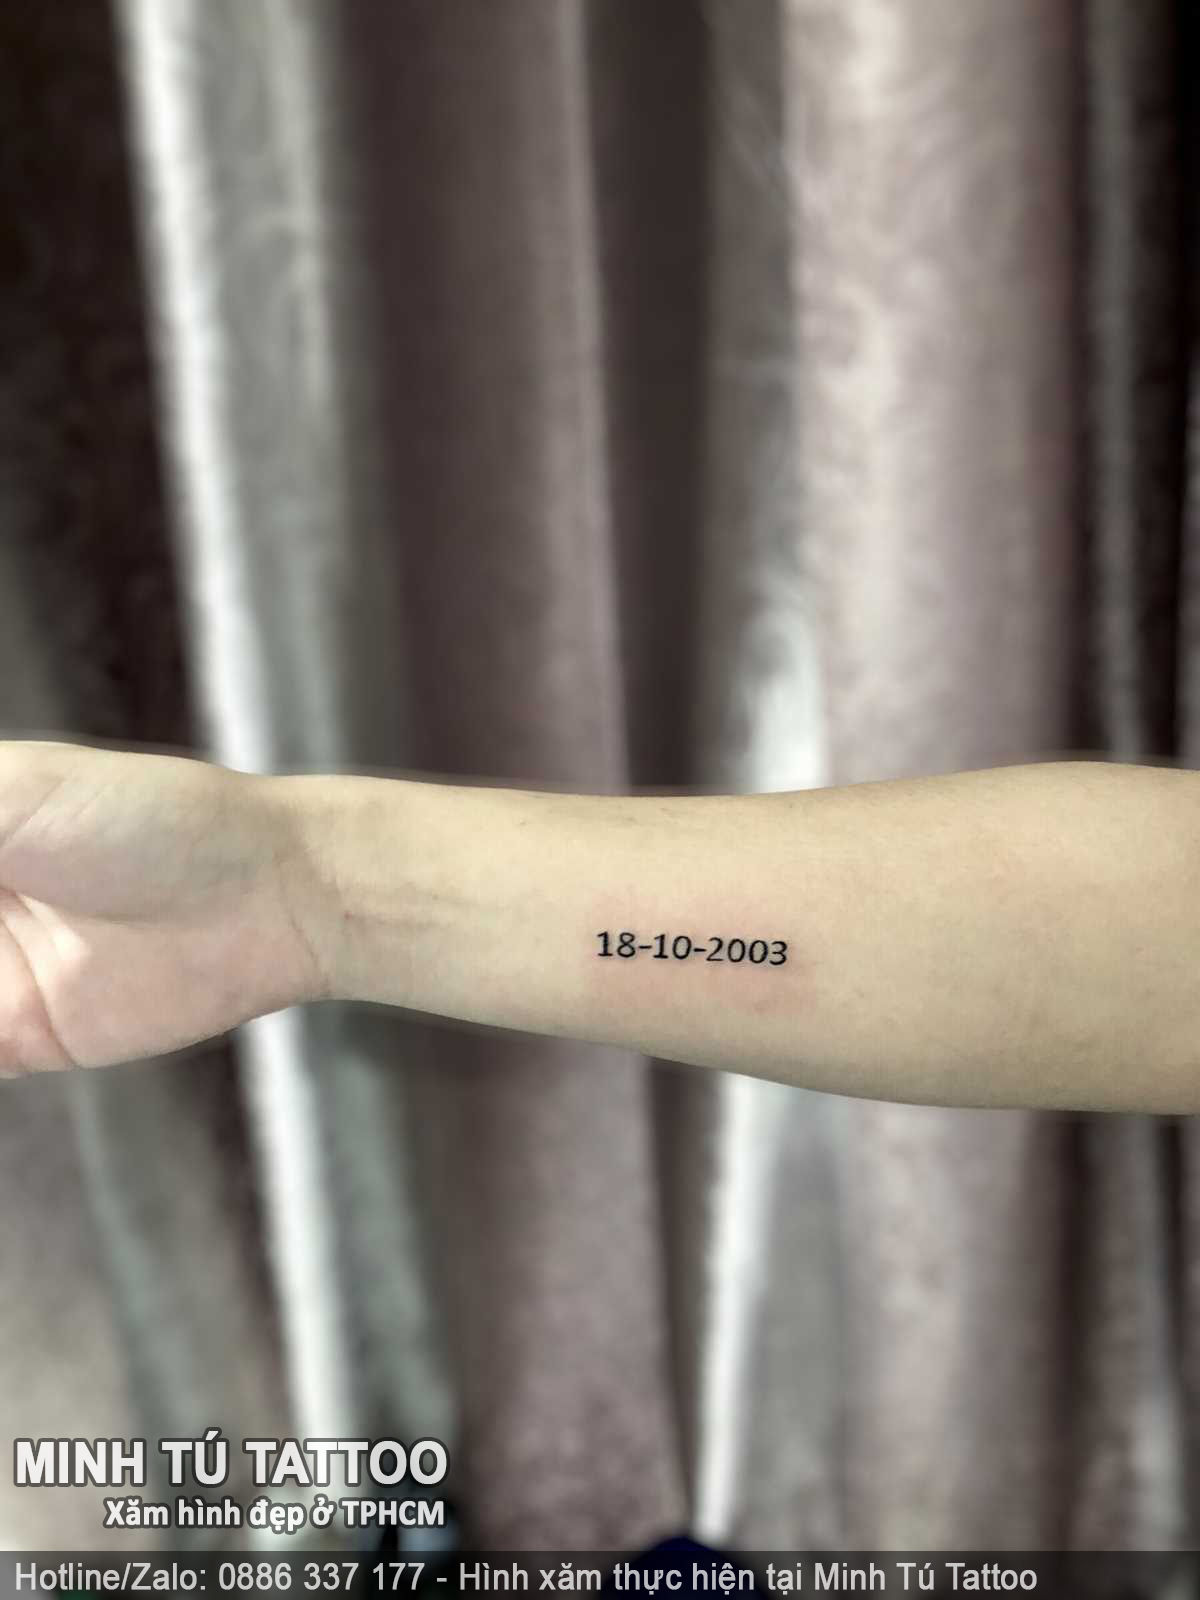 Tác phẩm hình xăm do Minh Tú Tattoo thực hiện 152